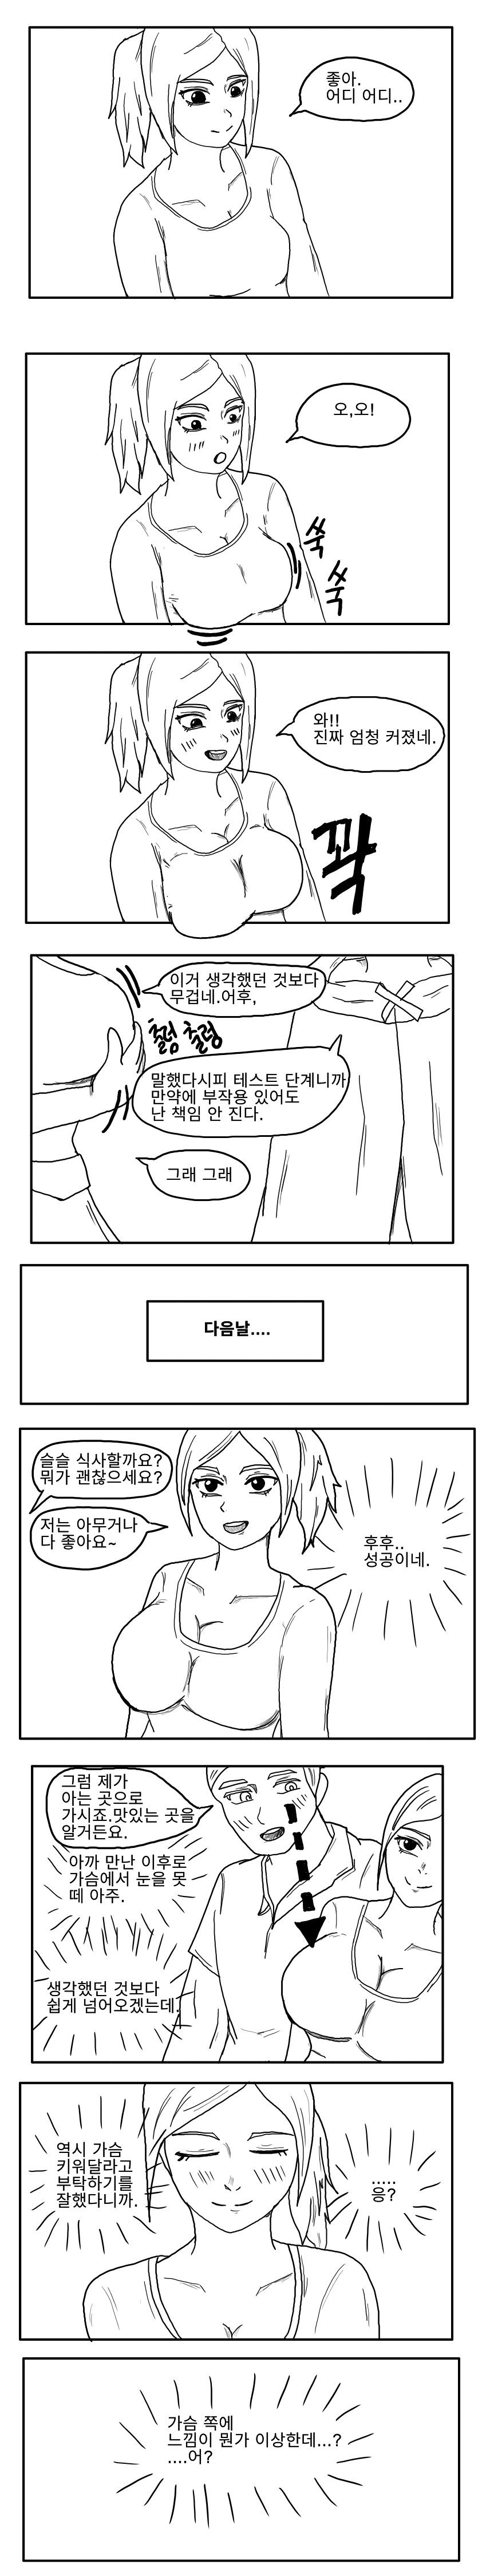 ㅇㅎ)마녀가 친구 가슴 키워주는 만화.manhwa